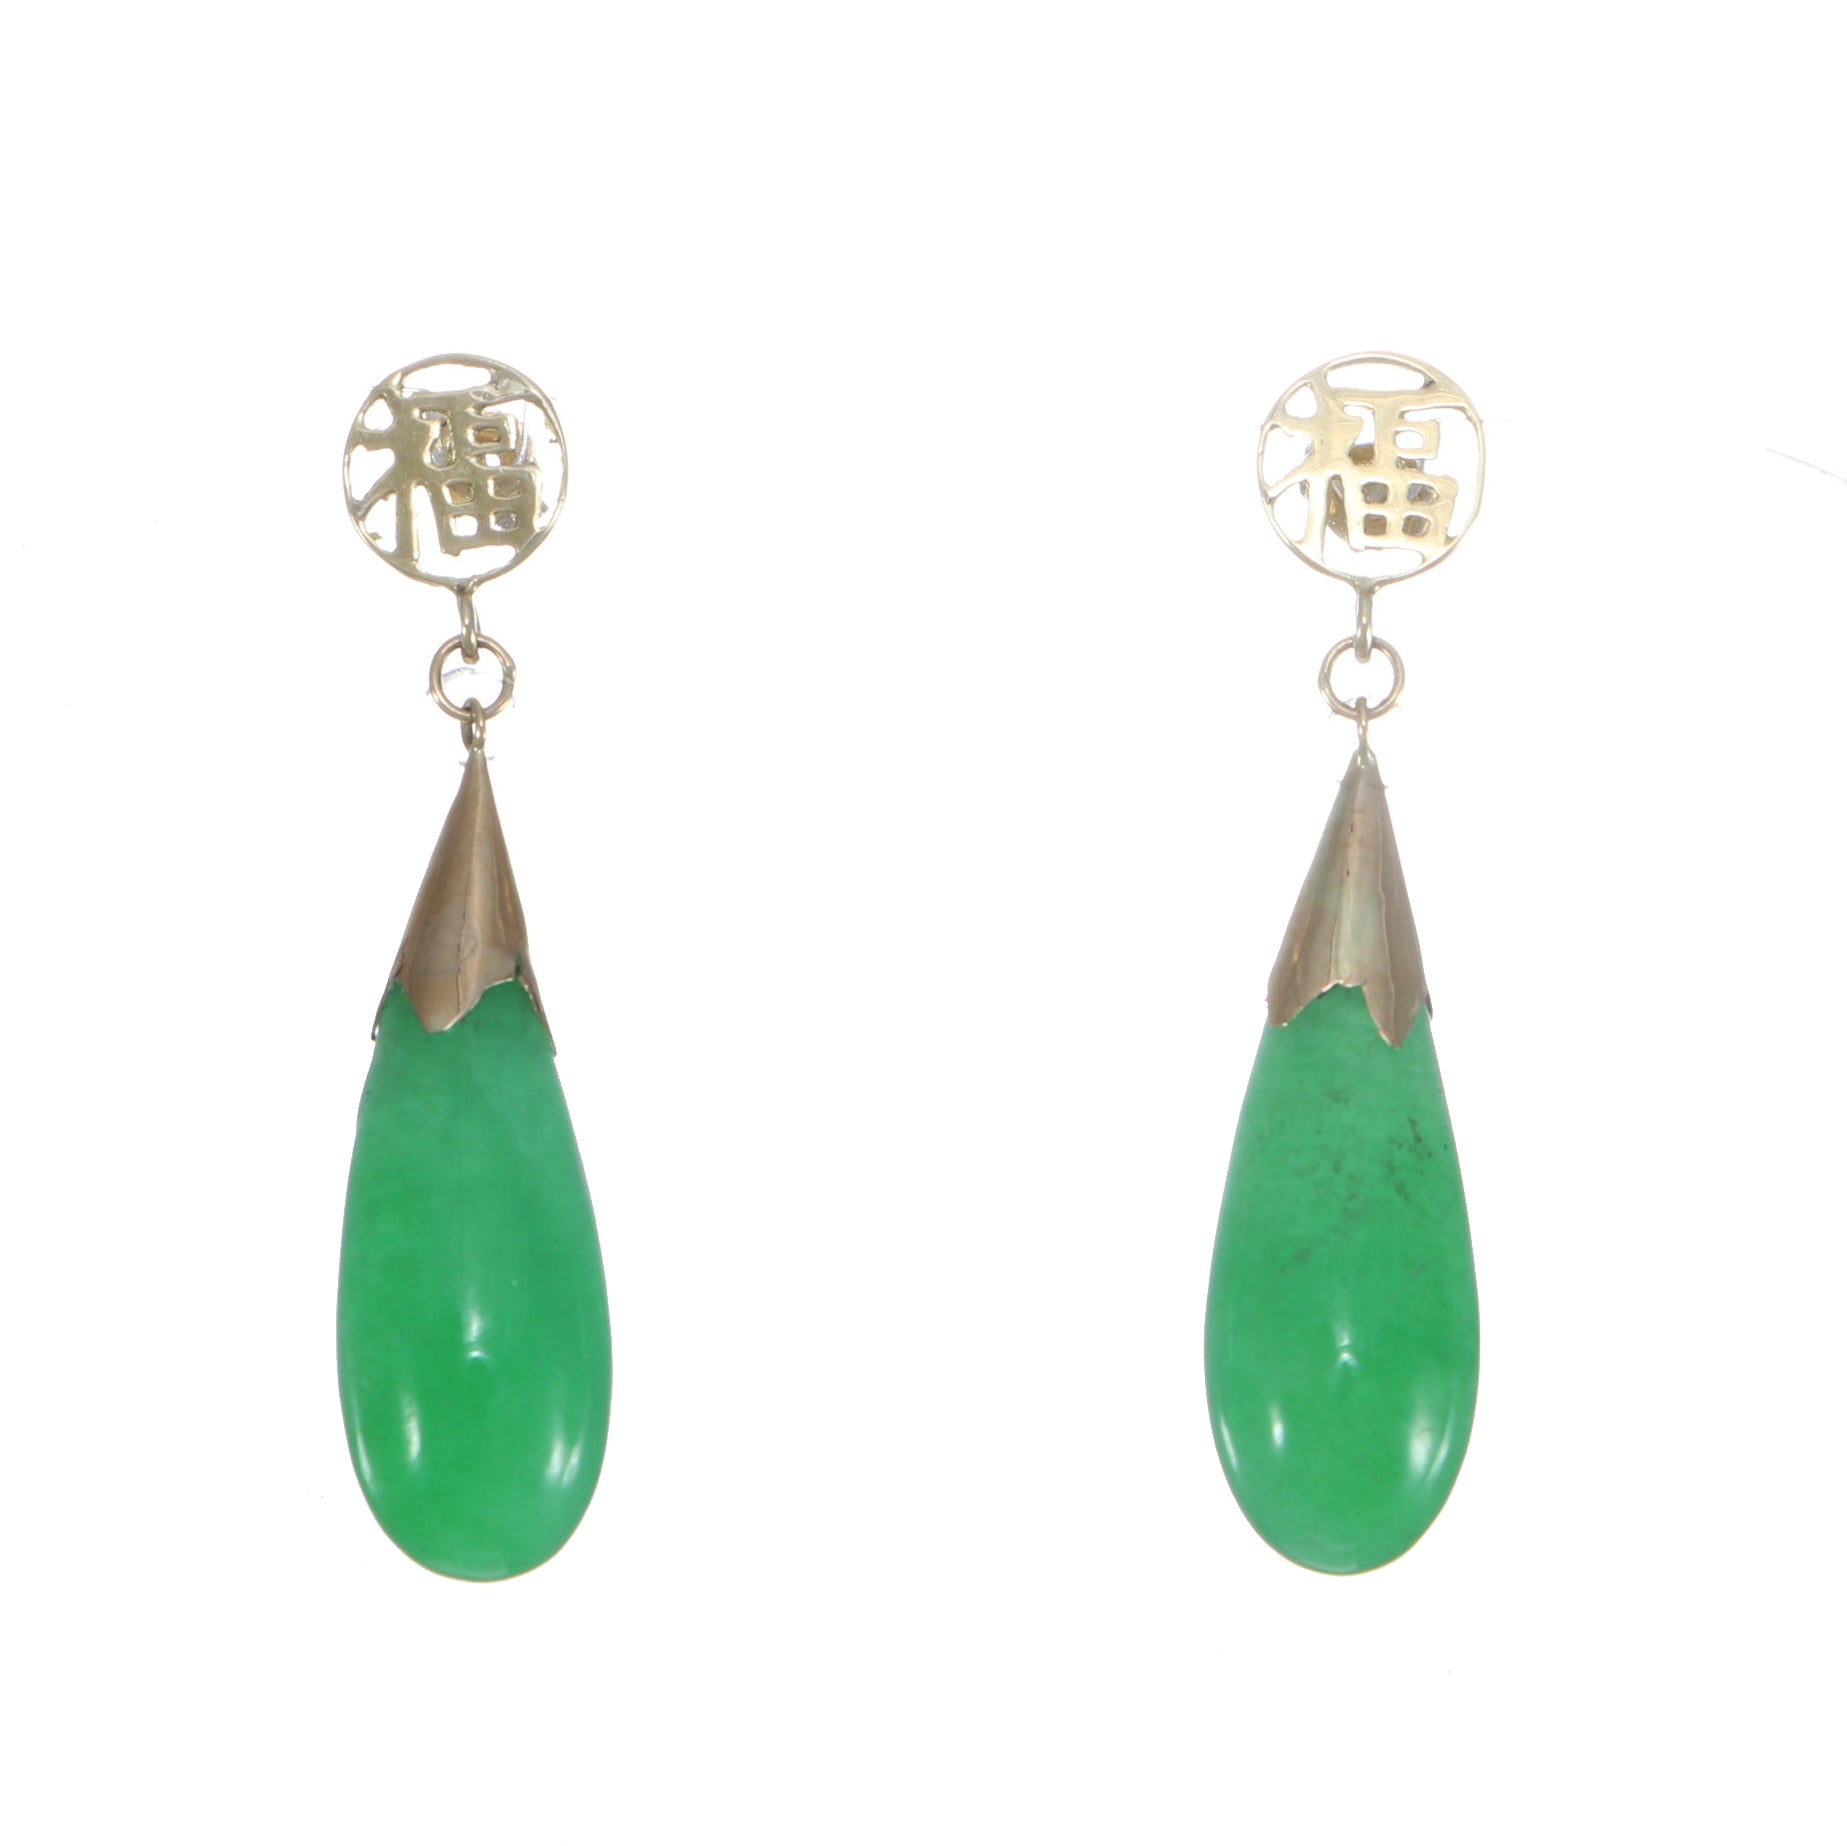 Discover more than 152 jade earrings hoop